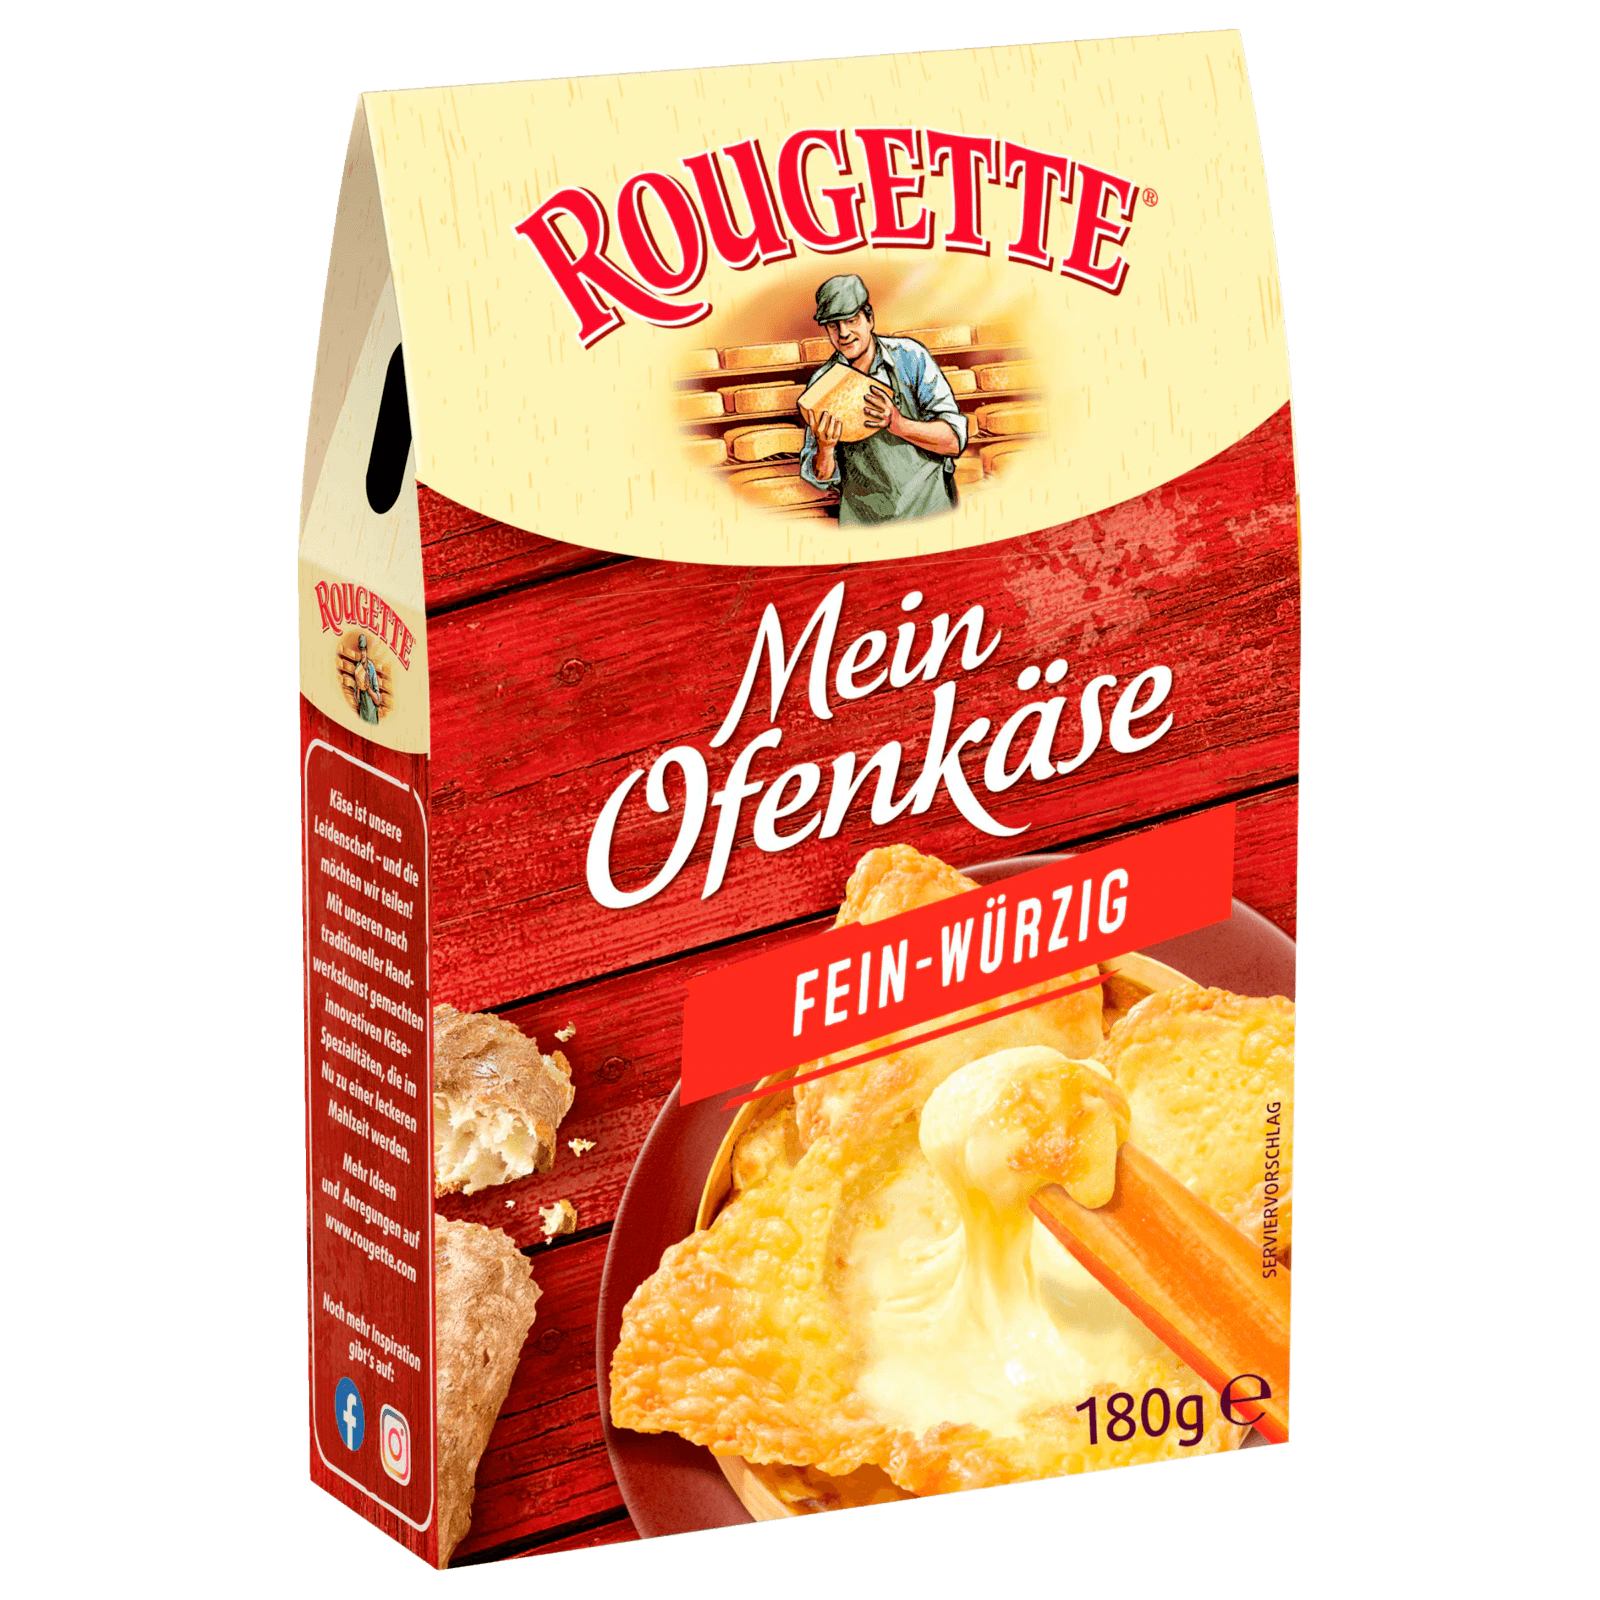 Rougette Der kleine Ofenkäse fein-würzig 180g bei REWE online bestellen!